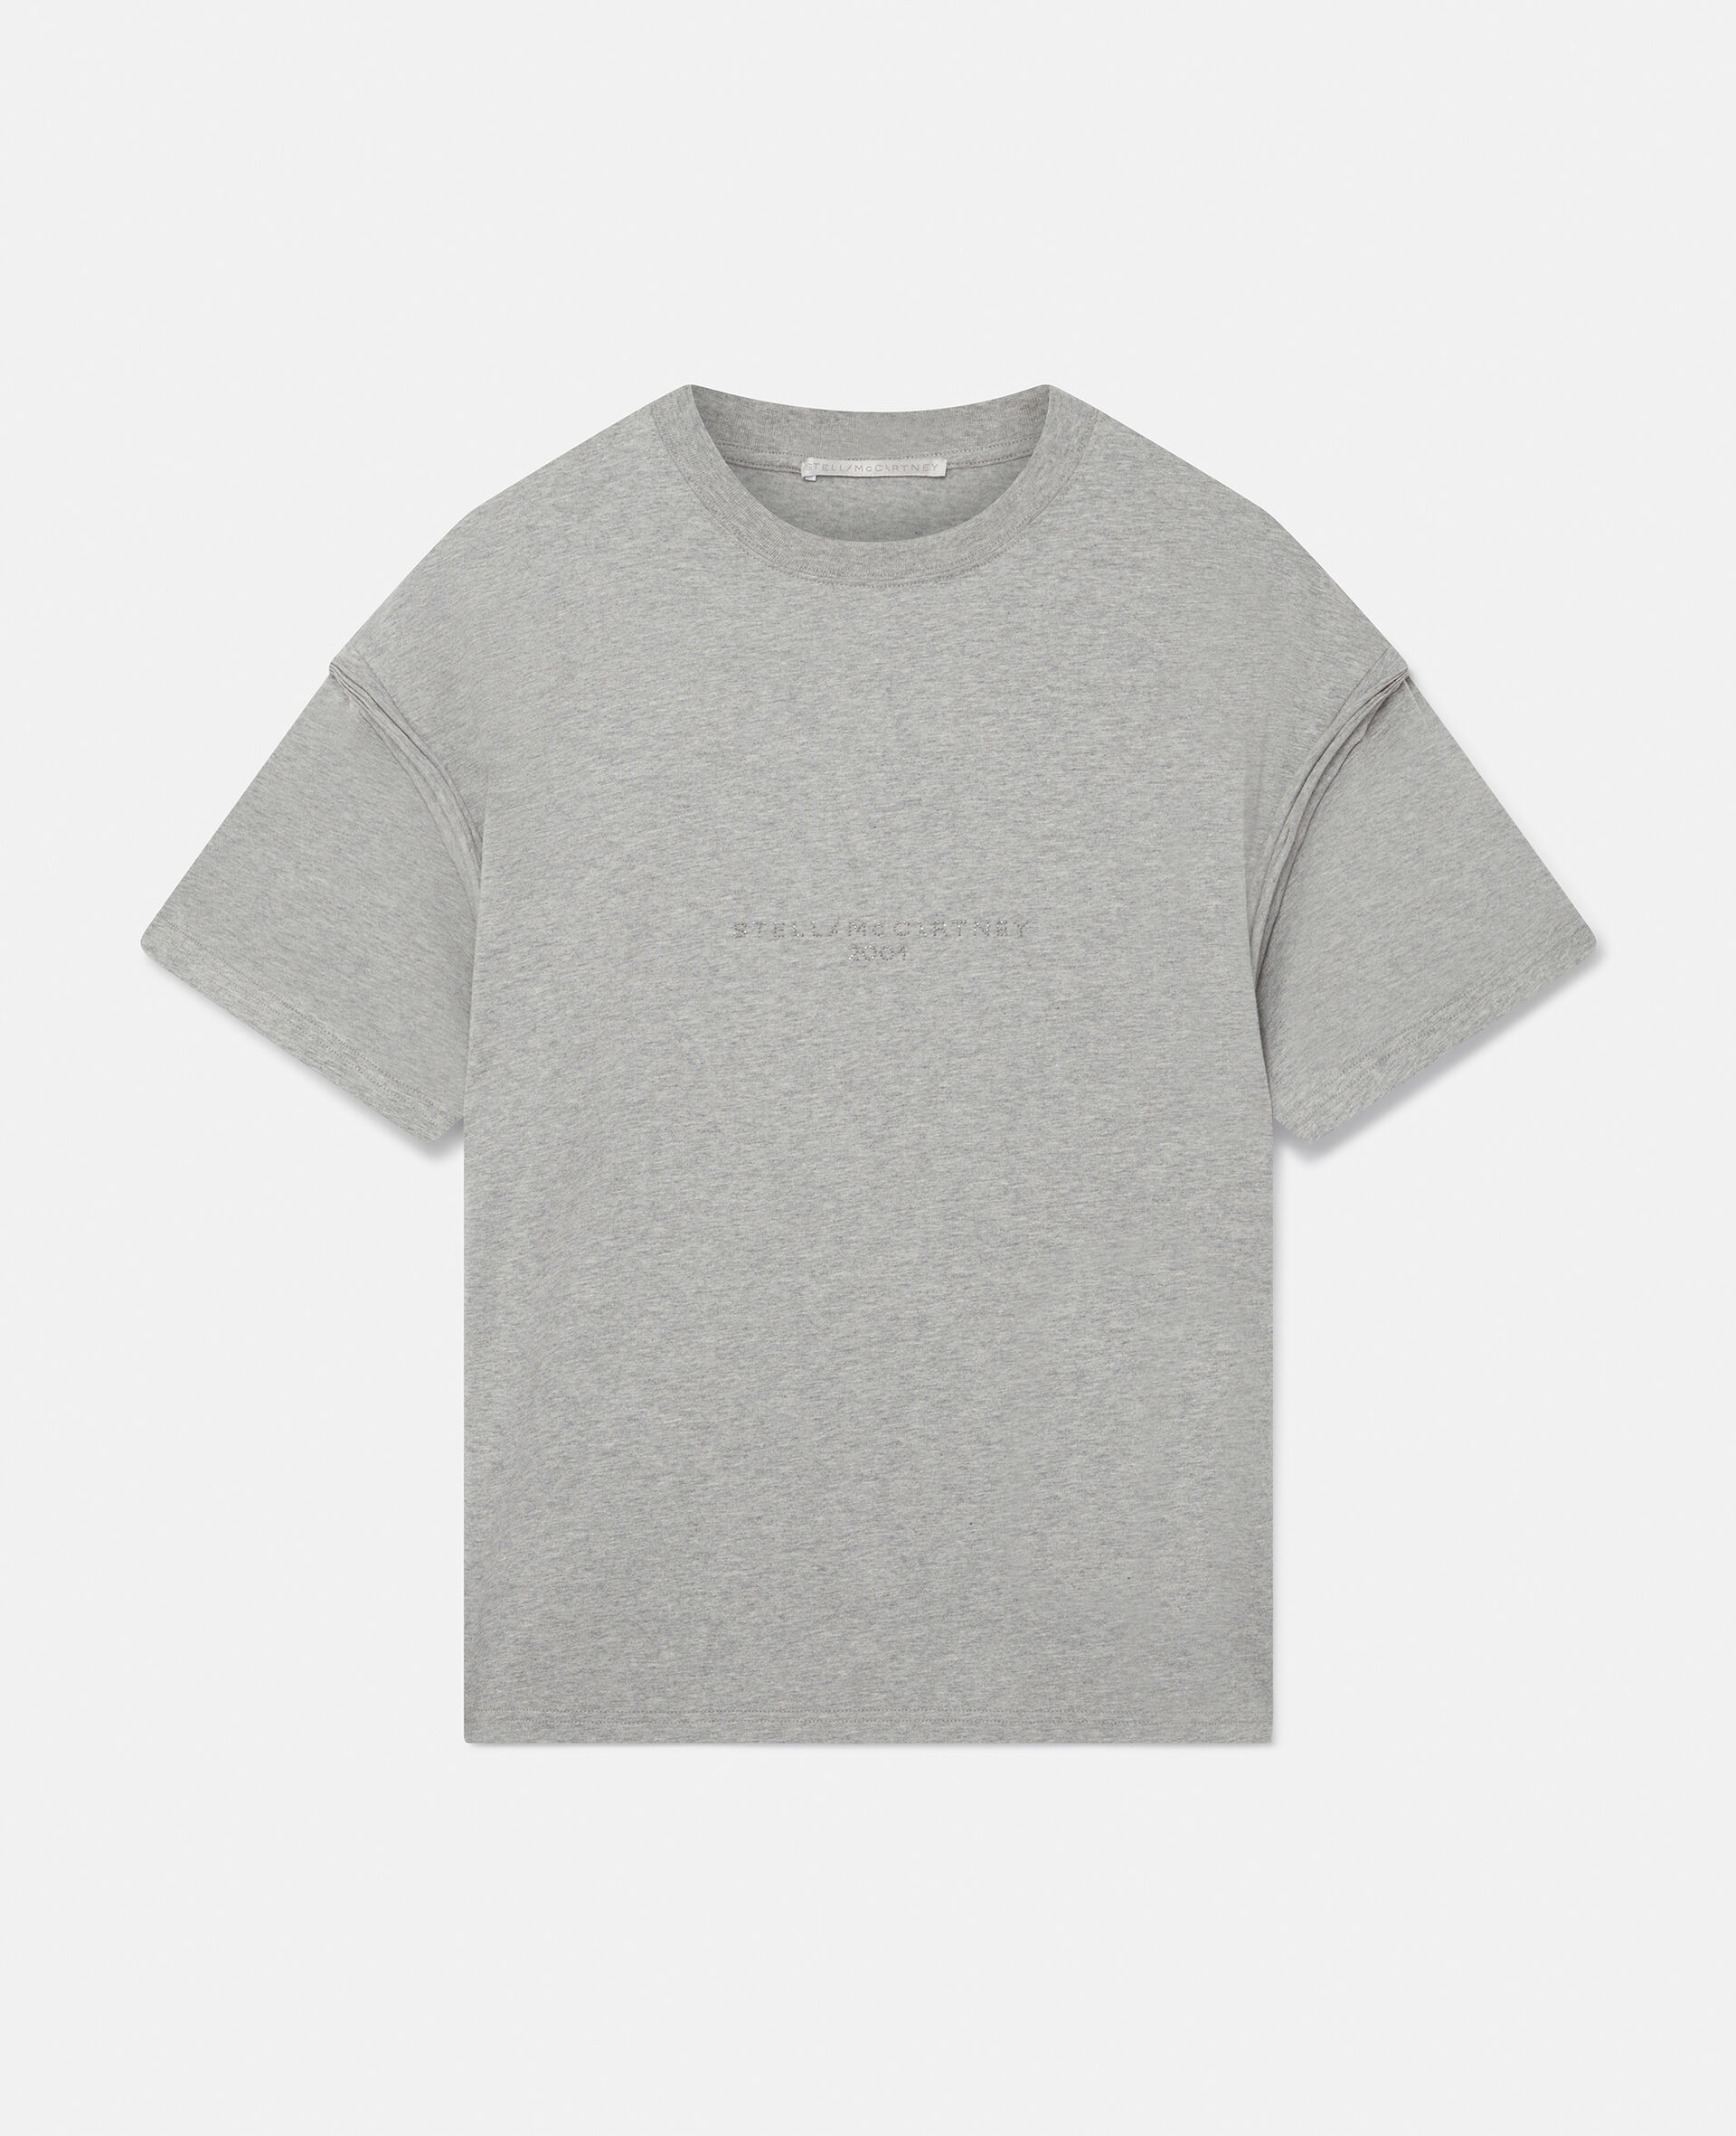 Oversized Rhinestud Logo T-Shirt-Grey-large image number 0